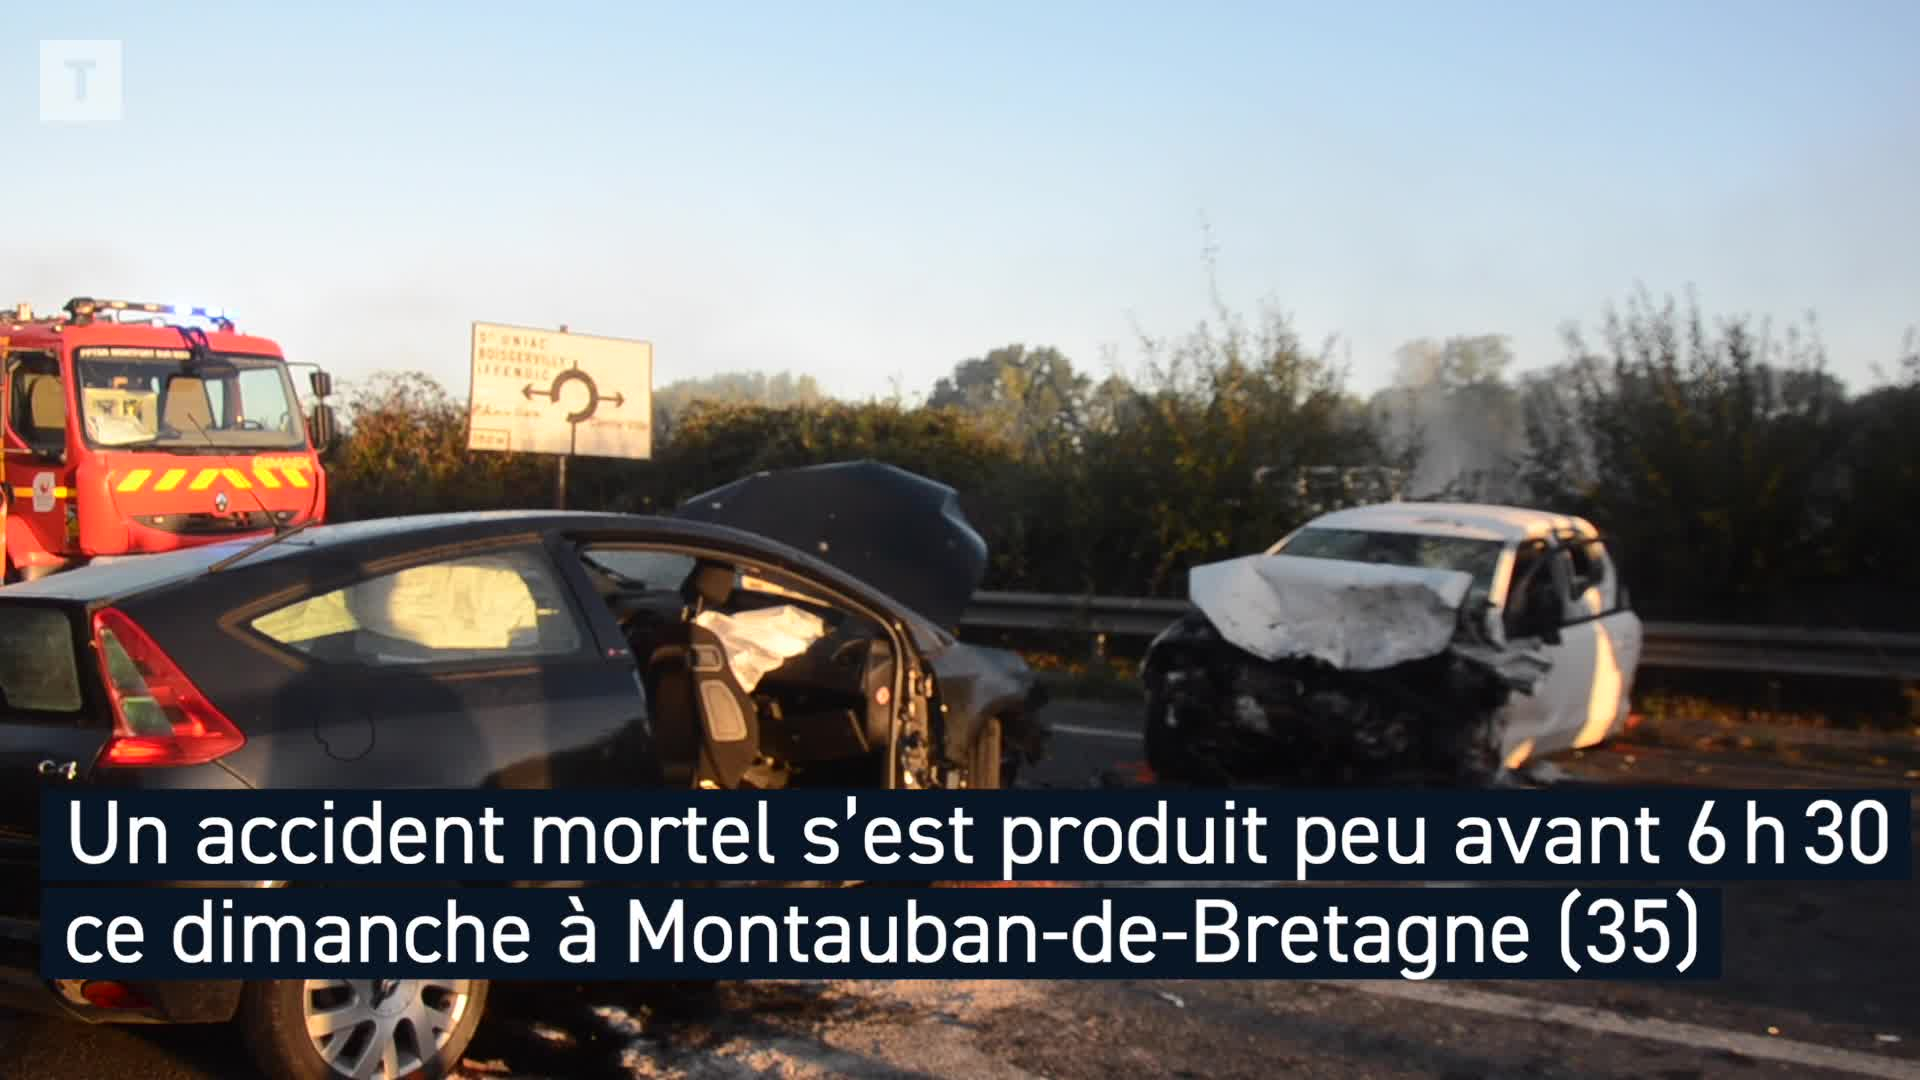 Deux jeunes meurent dans un accident à Montauban-de-Bretagne, trois blessés graves (Le Télégramme)